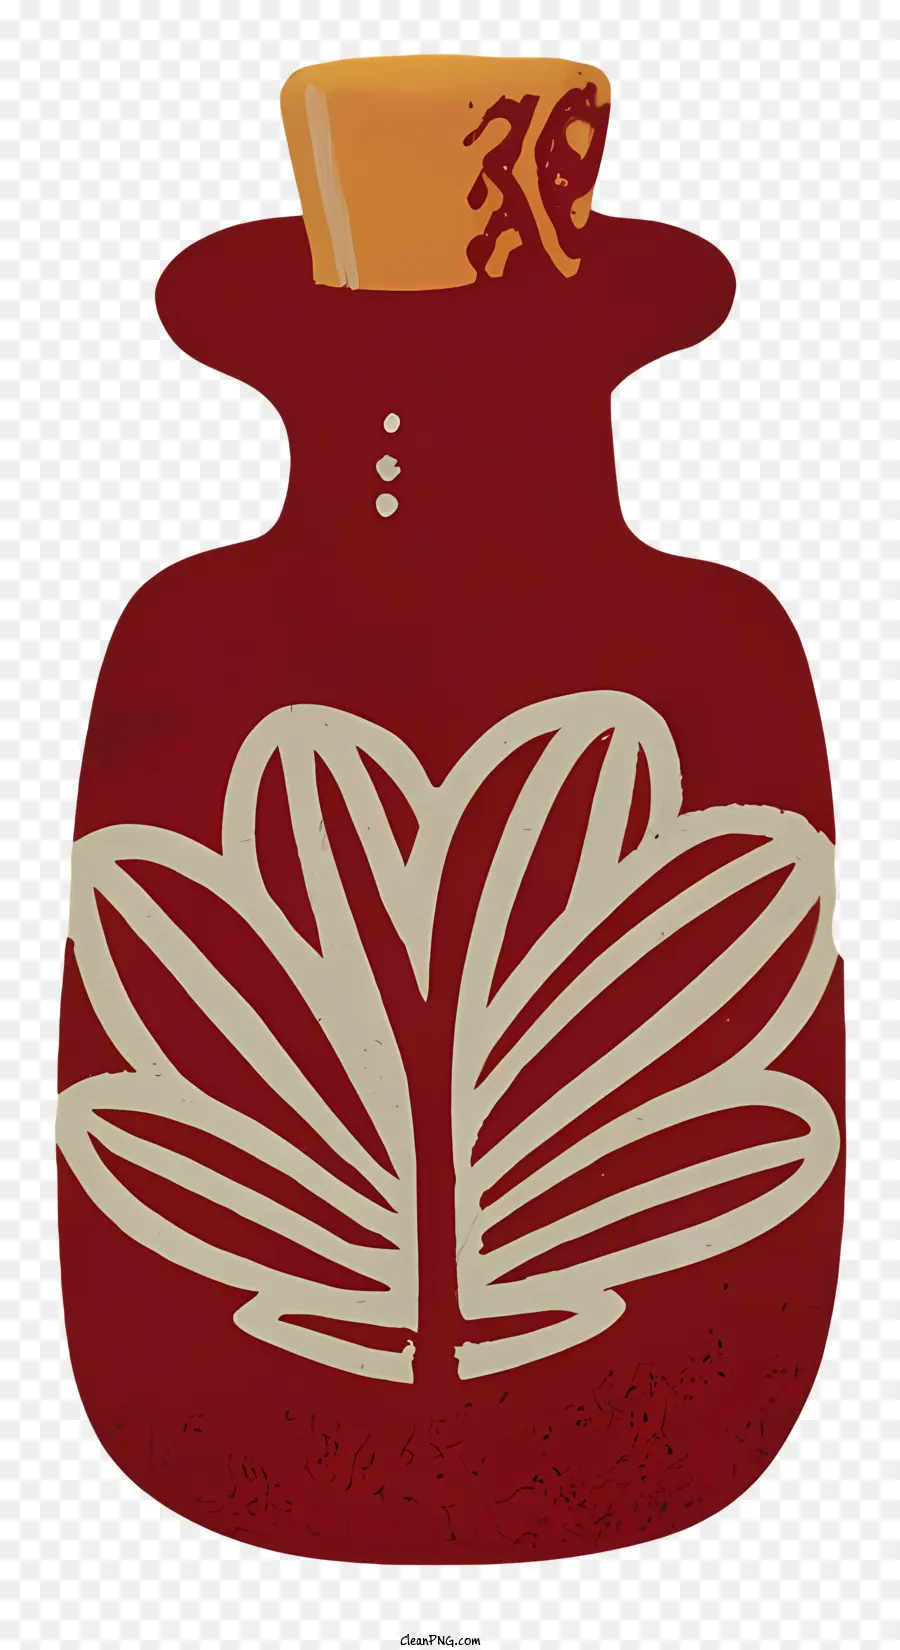 Blumenmuster - Rote Vase mit gelbem Deckel, weißes Blatt